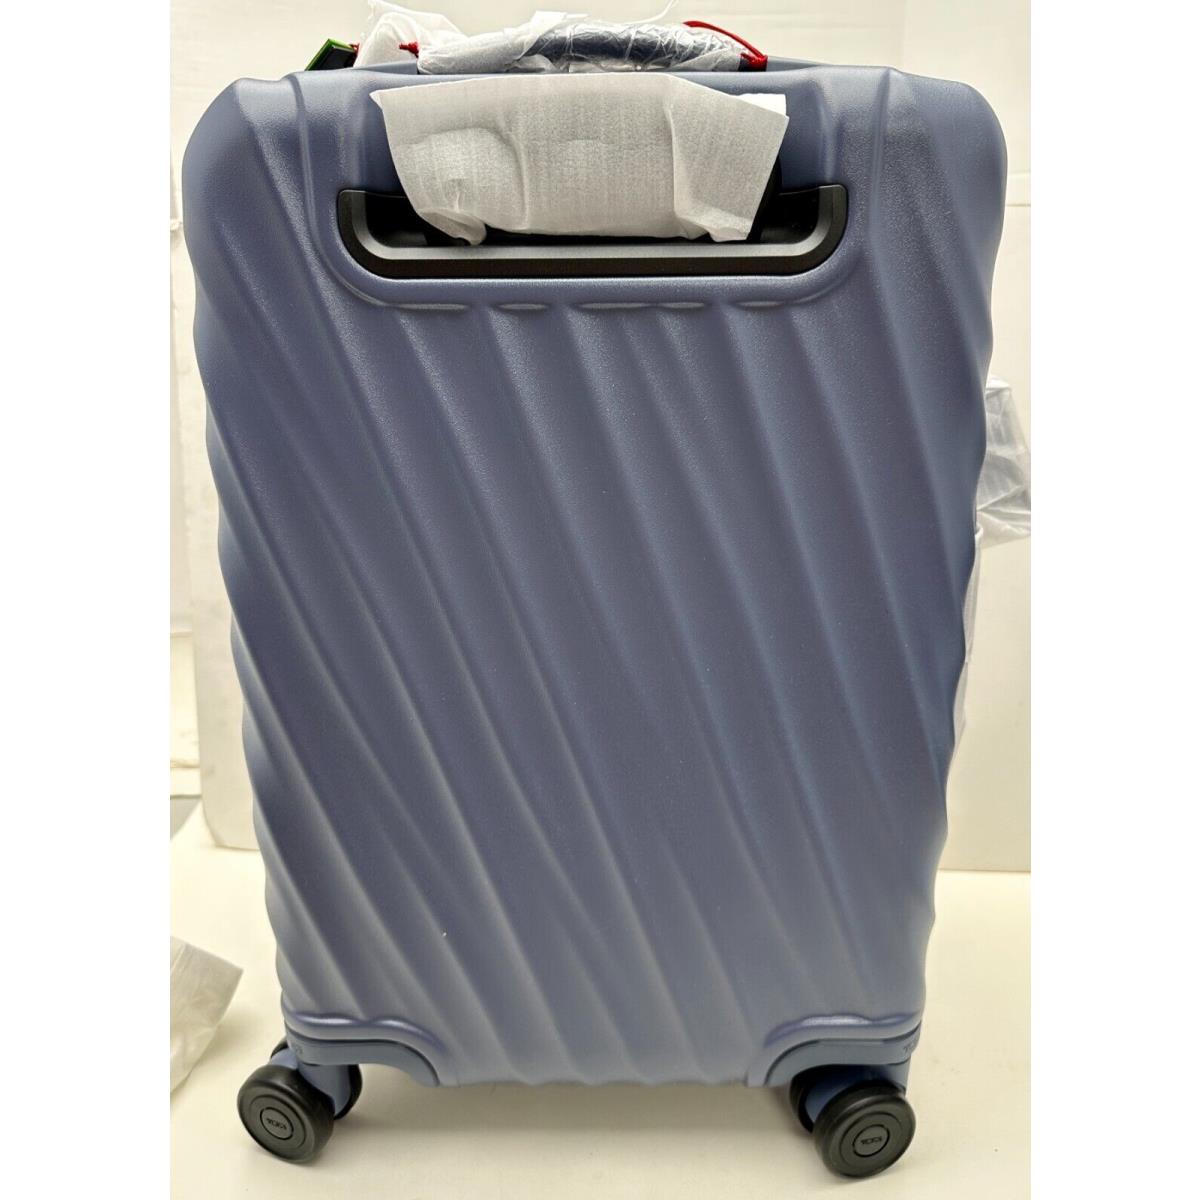 Tumi 19 Degree International Expandable 4 Wheeled Carry On Luggage 22 Slateblue